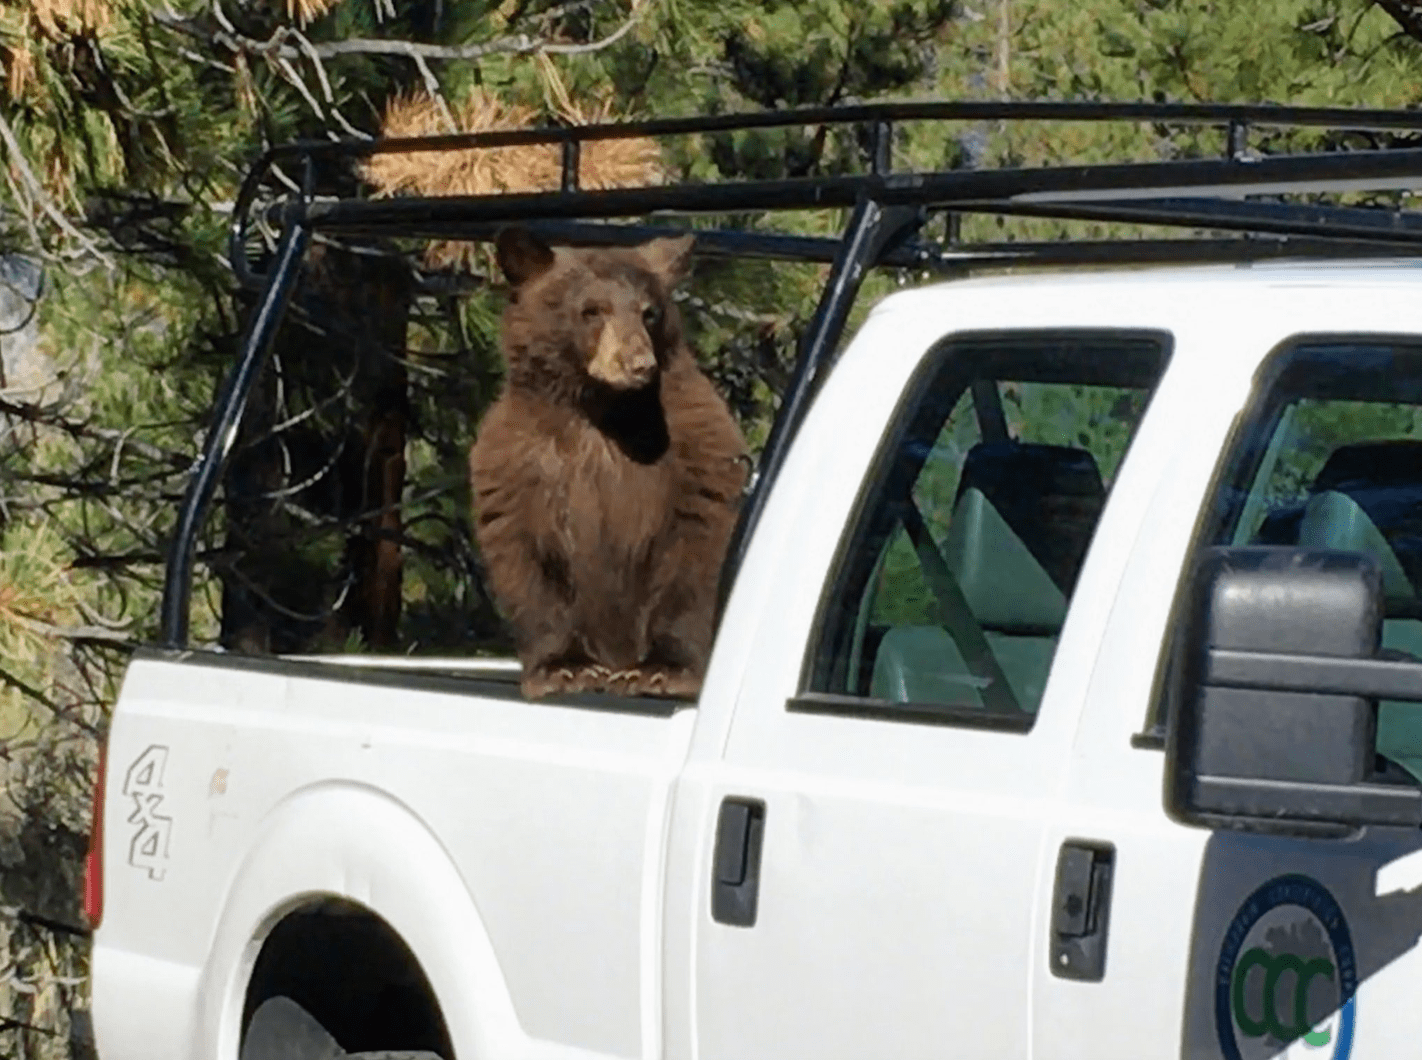 bears, Tahoe, bear, California